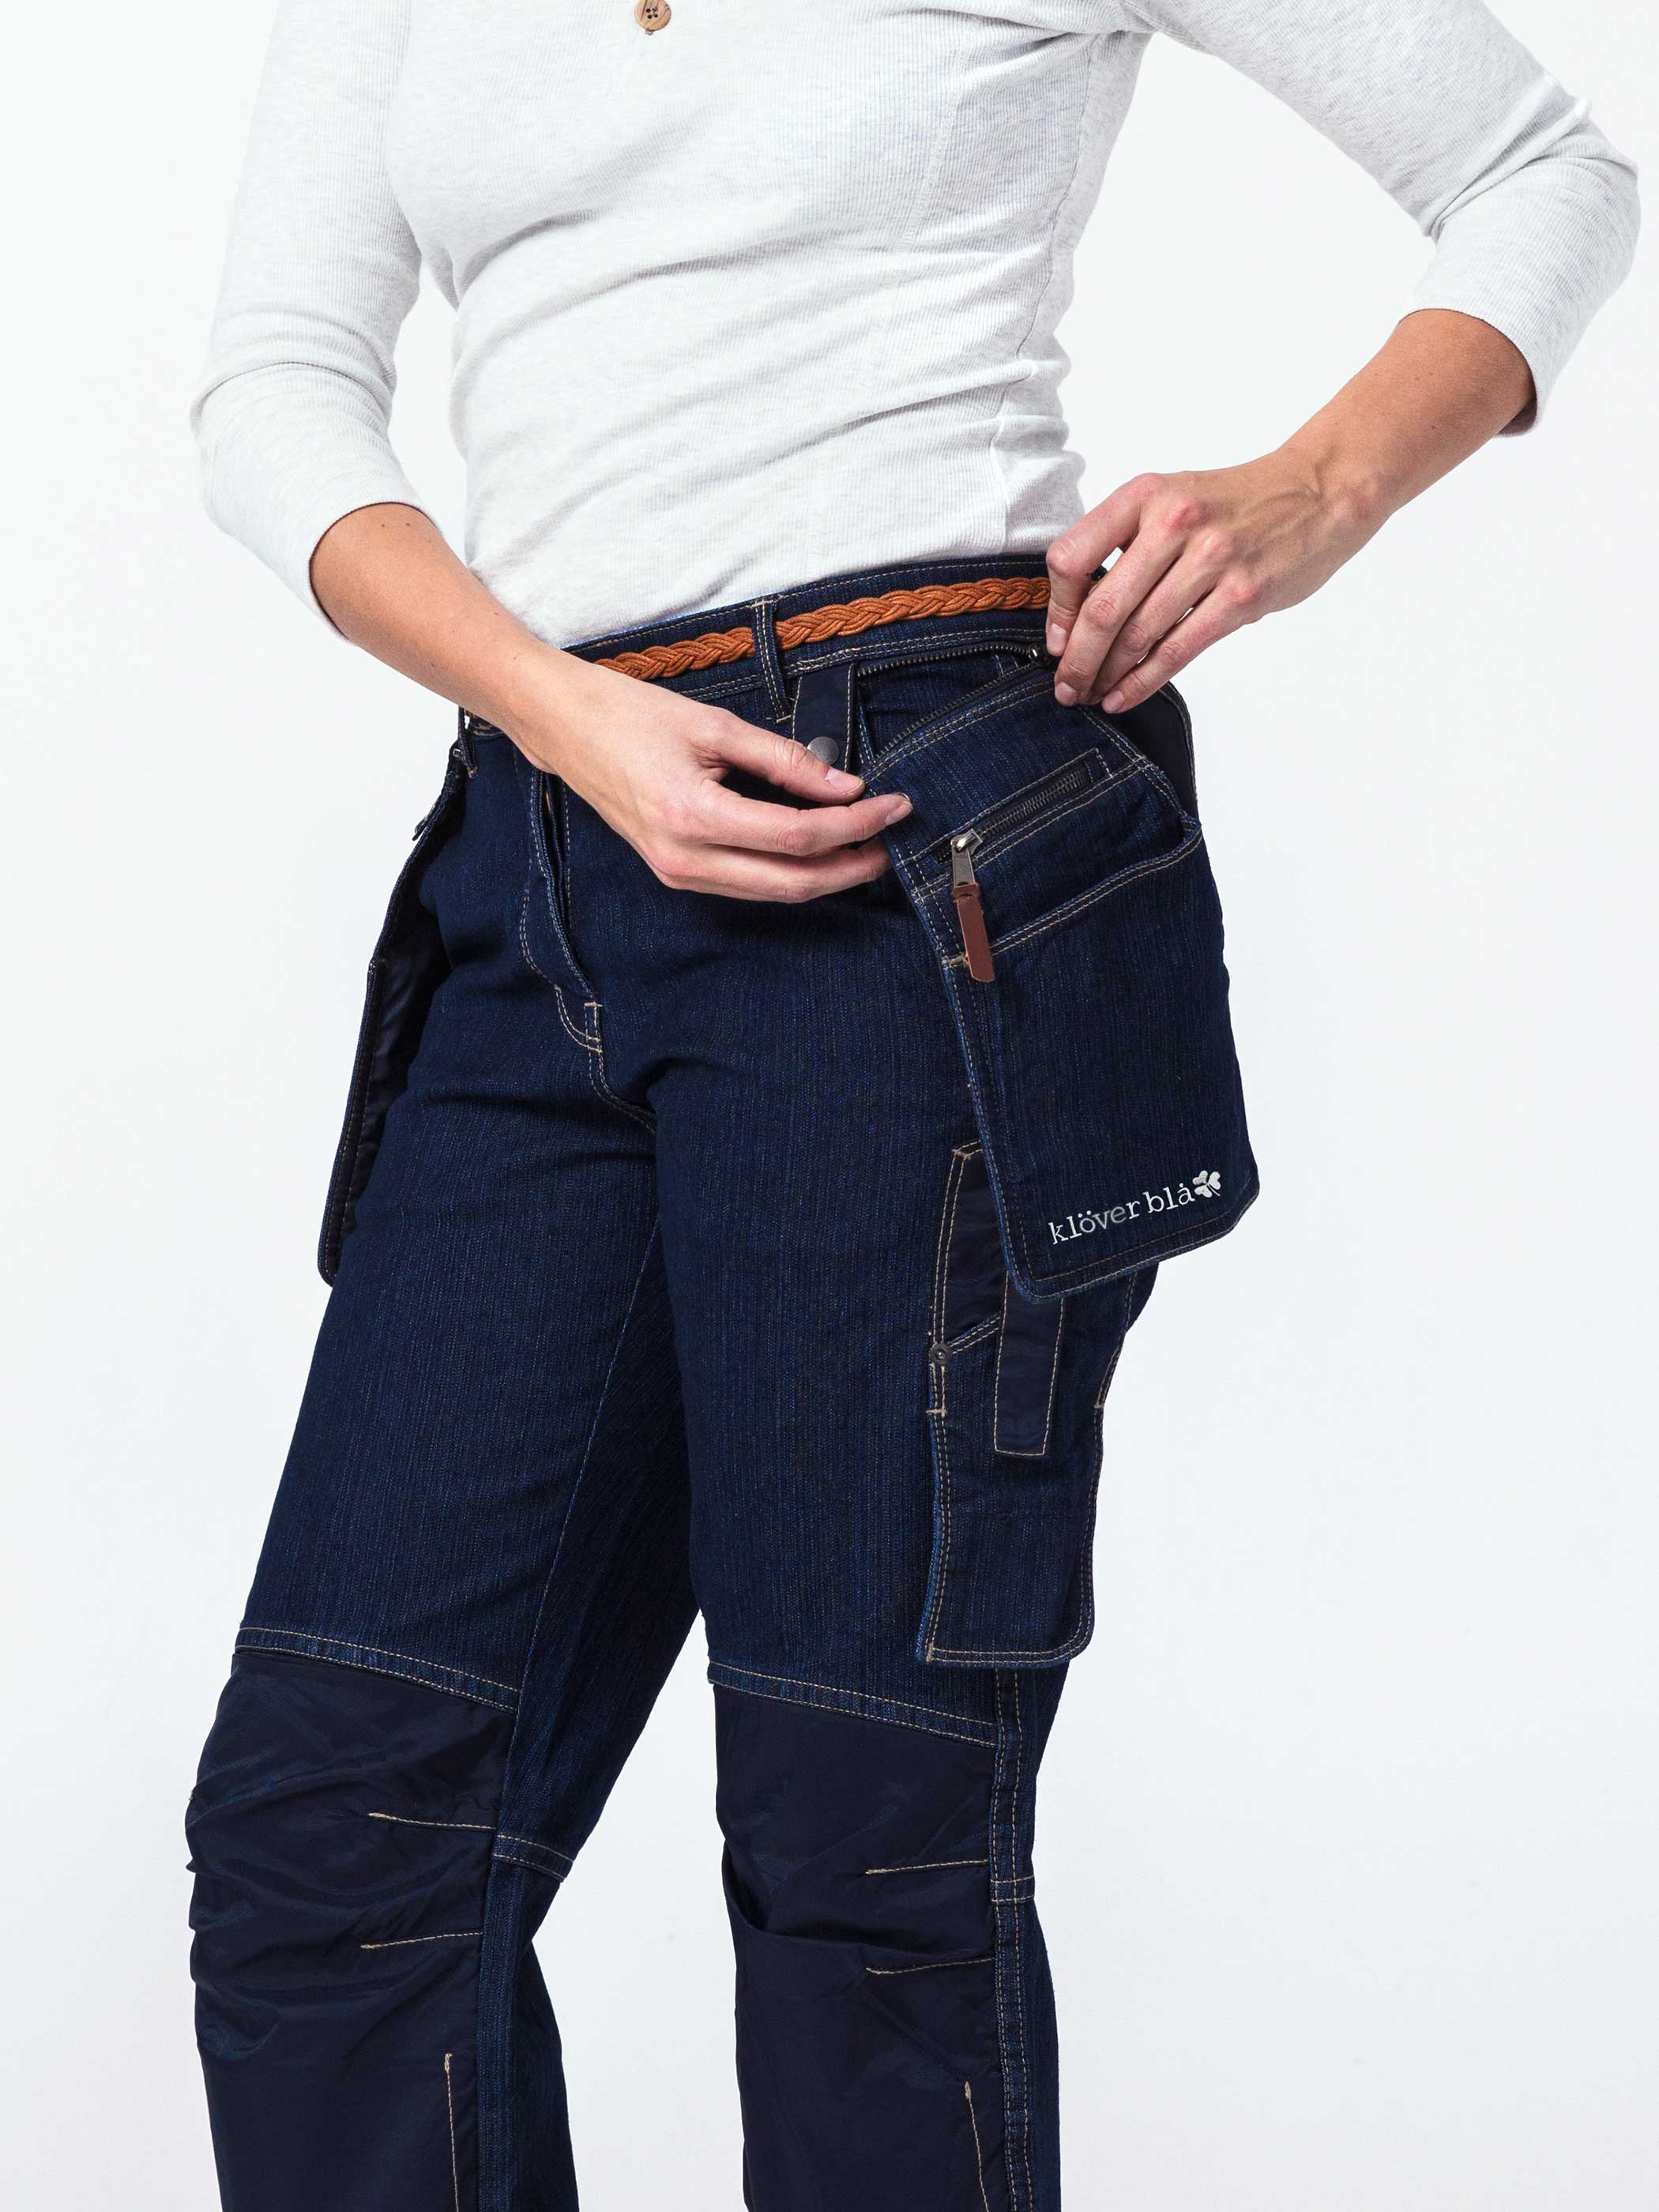 Debbie Denim Worker Pants - women’s work trousers